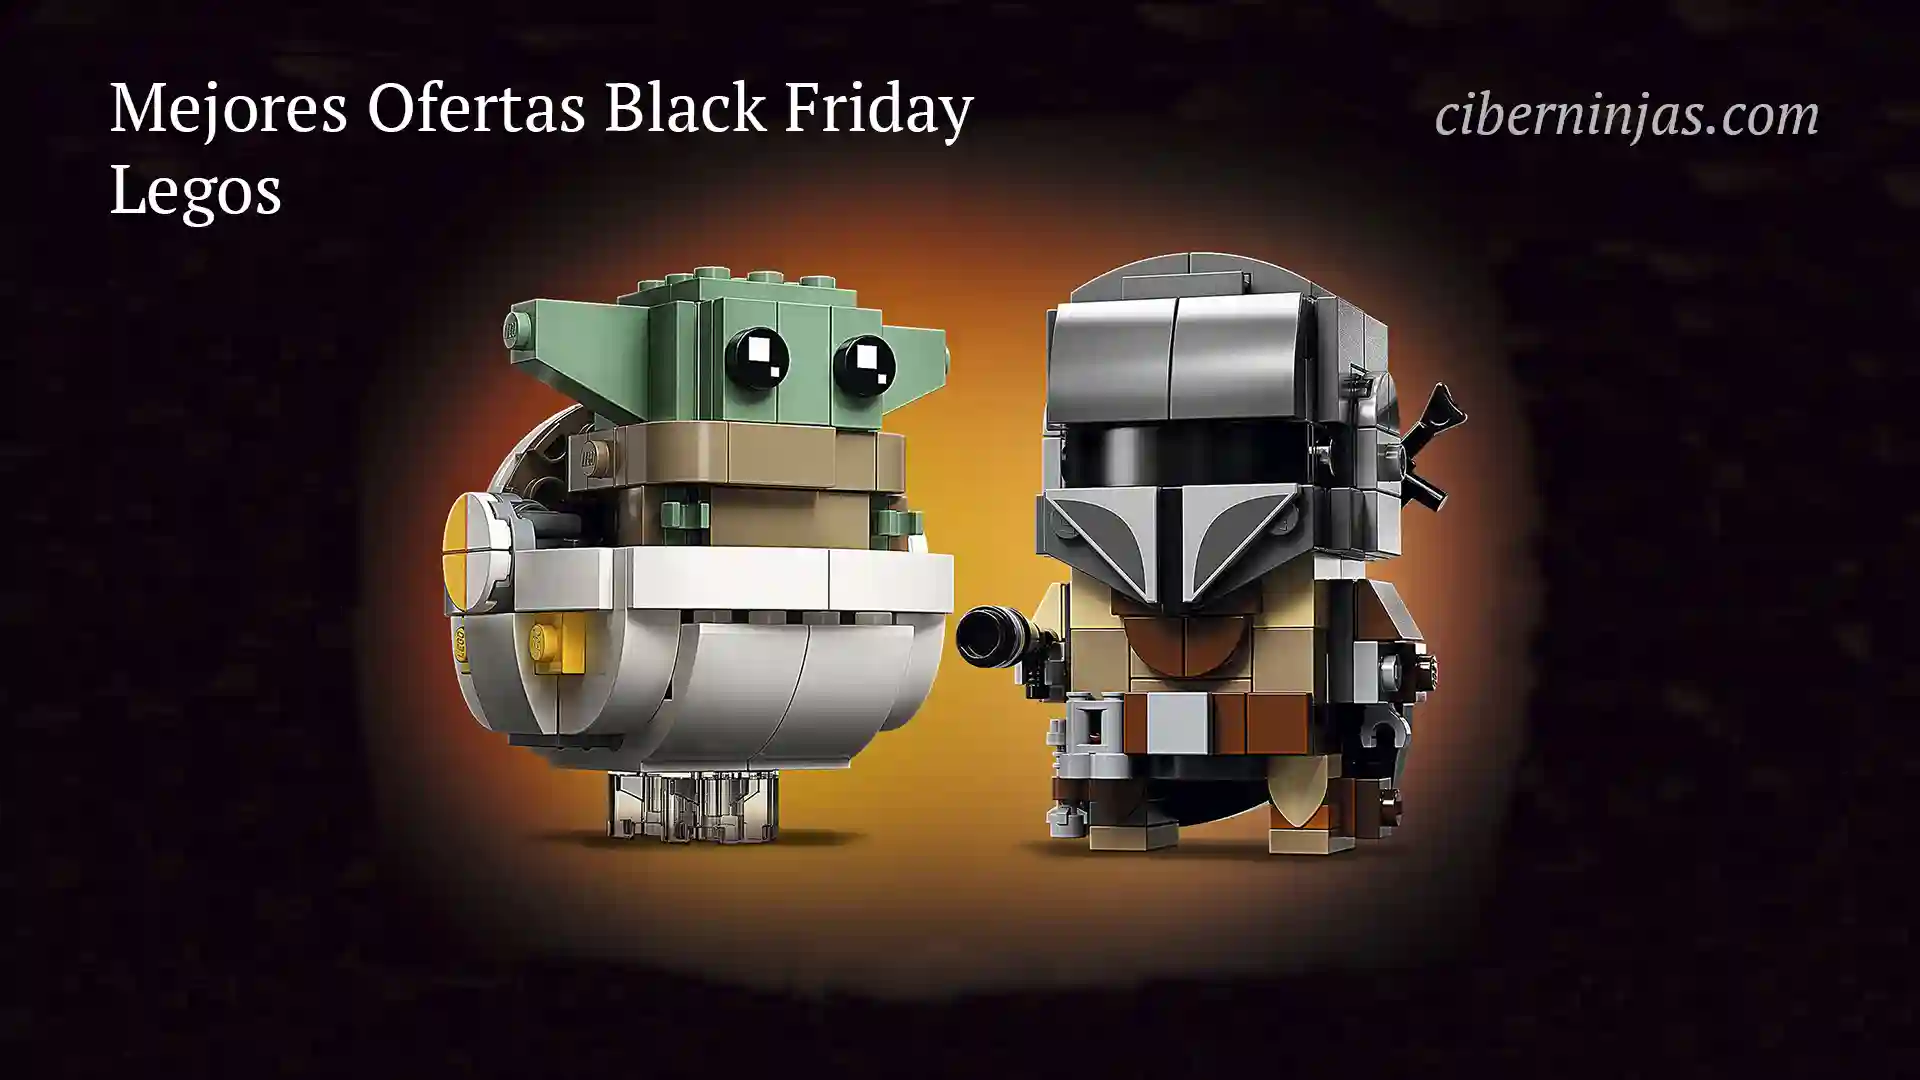 Mejores Ofertas de Lego del Black Friday